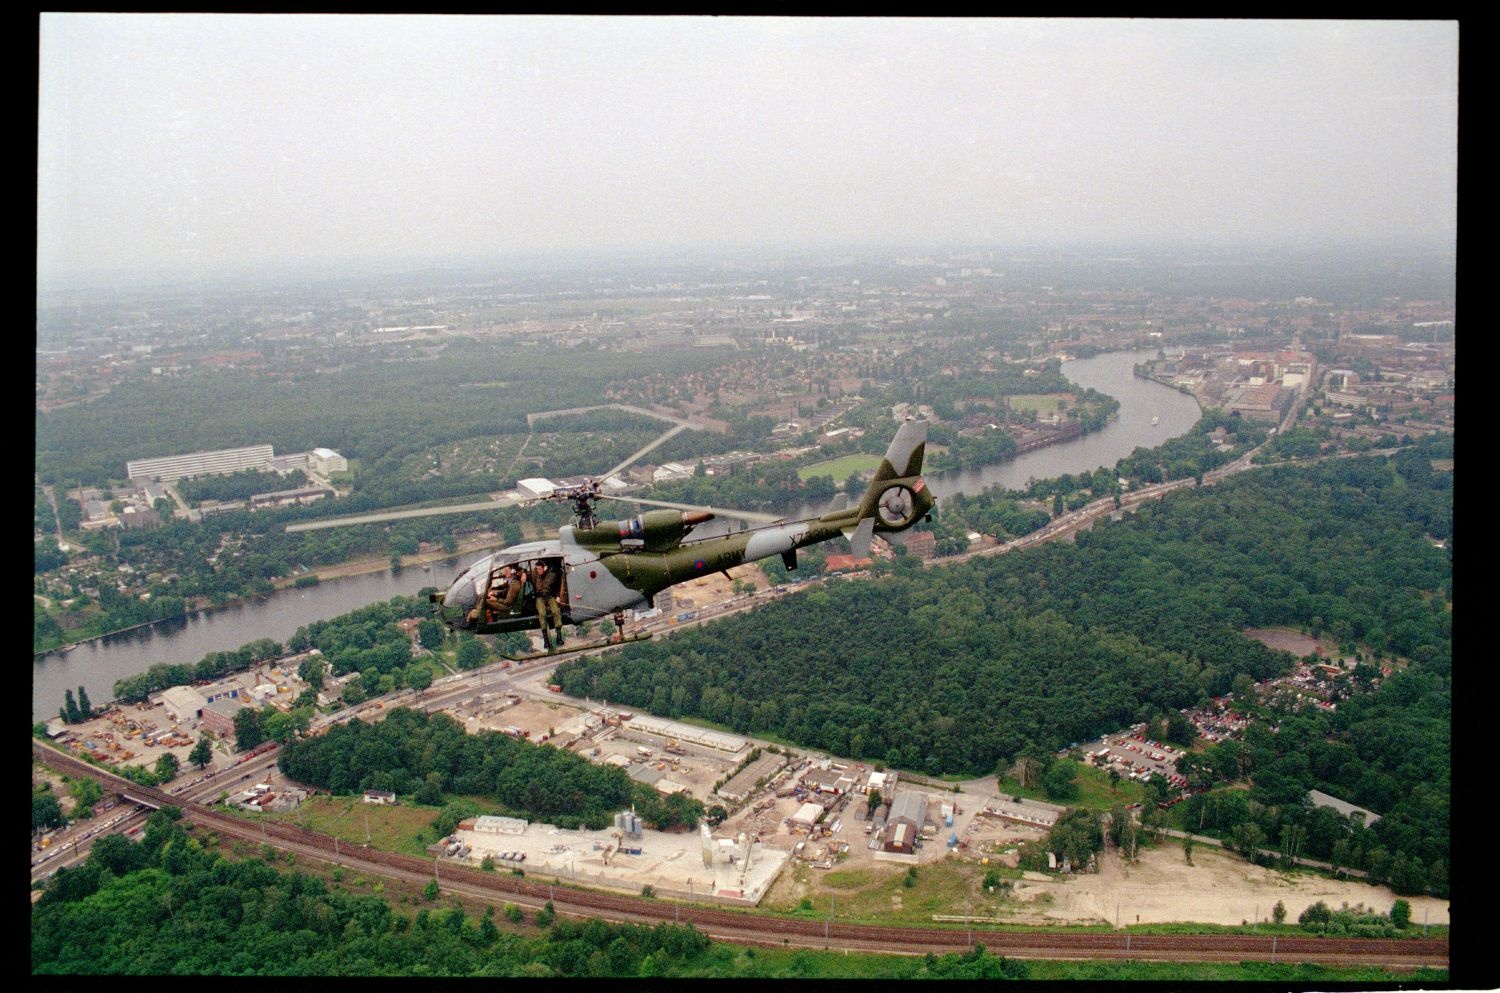 Fotografie: Übungsflug von alliierten Hubschraubern in Berlin (AlliiertenMuseum/U.S. Army Photograph Public Domain Mark)